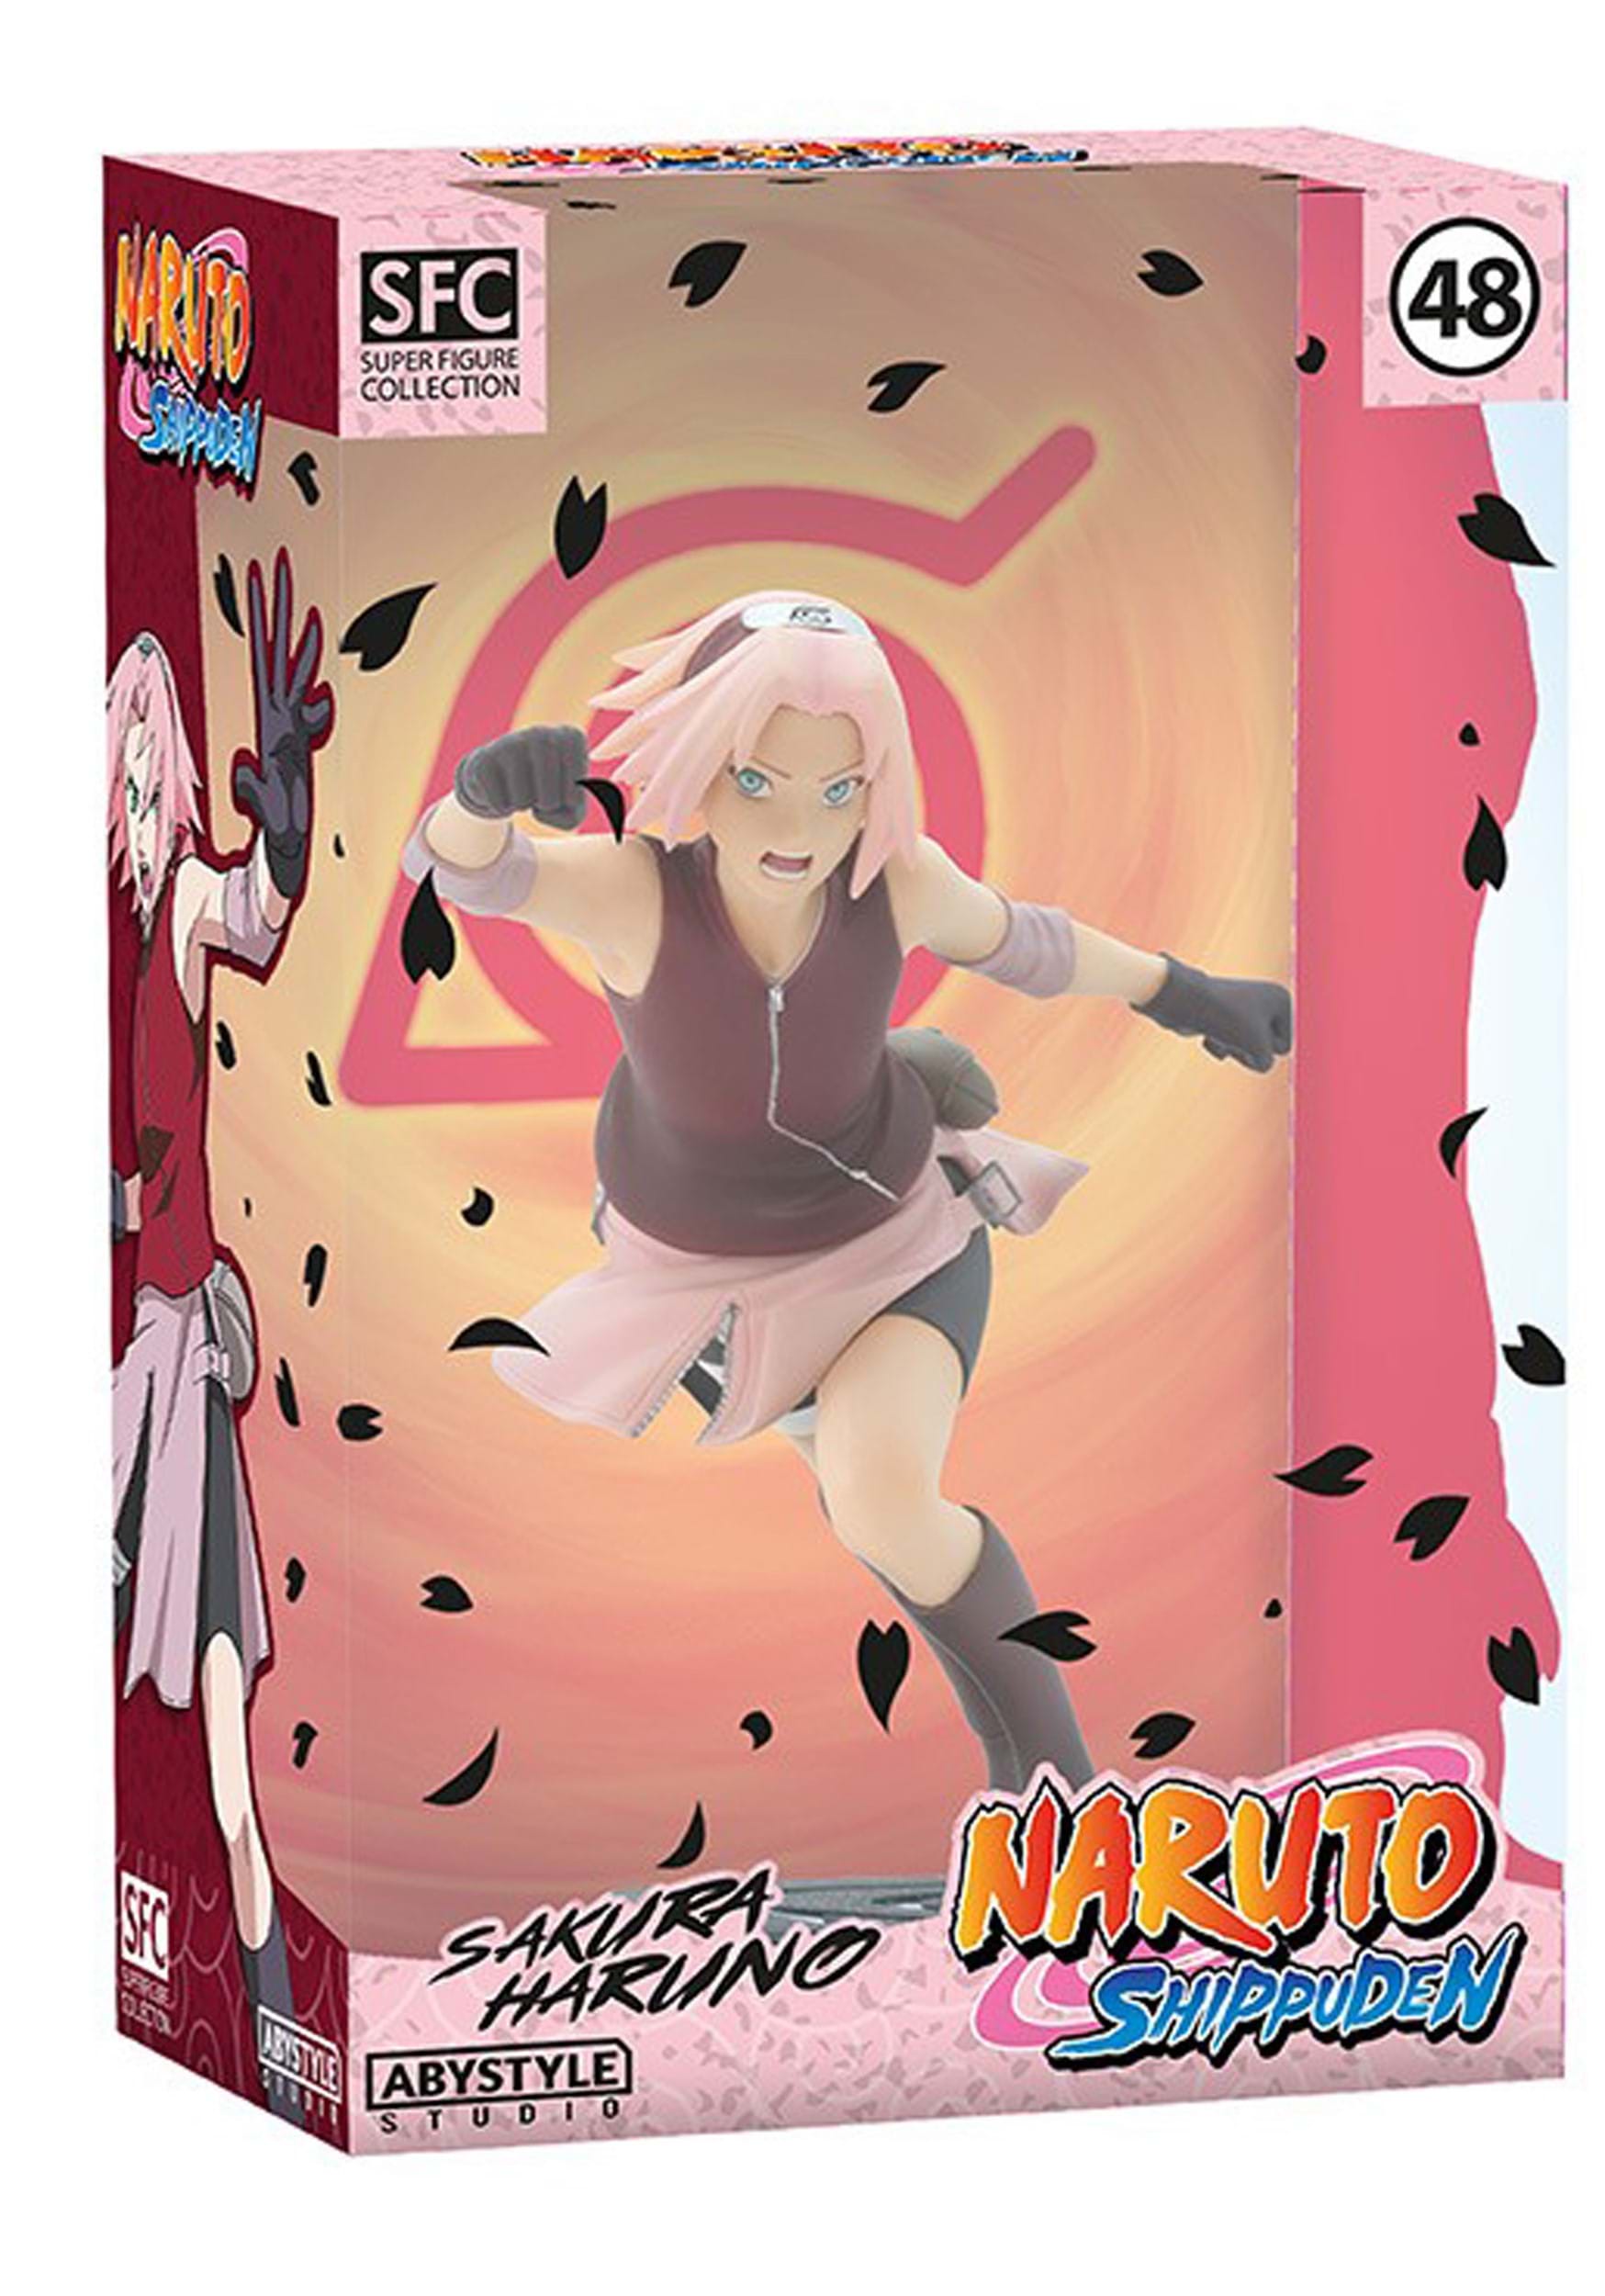 Naruto Shippuden Sakura SFC Figure